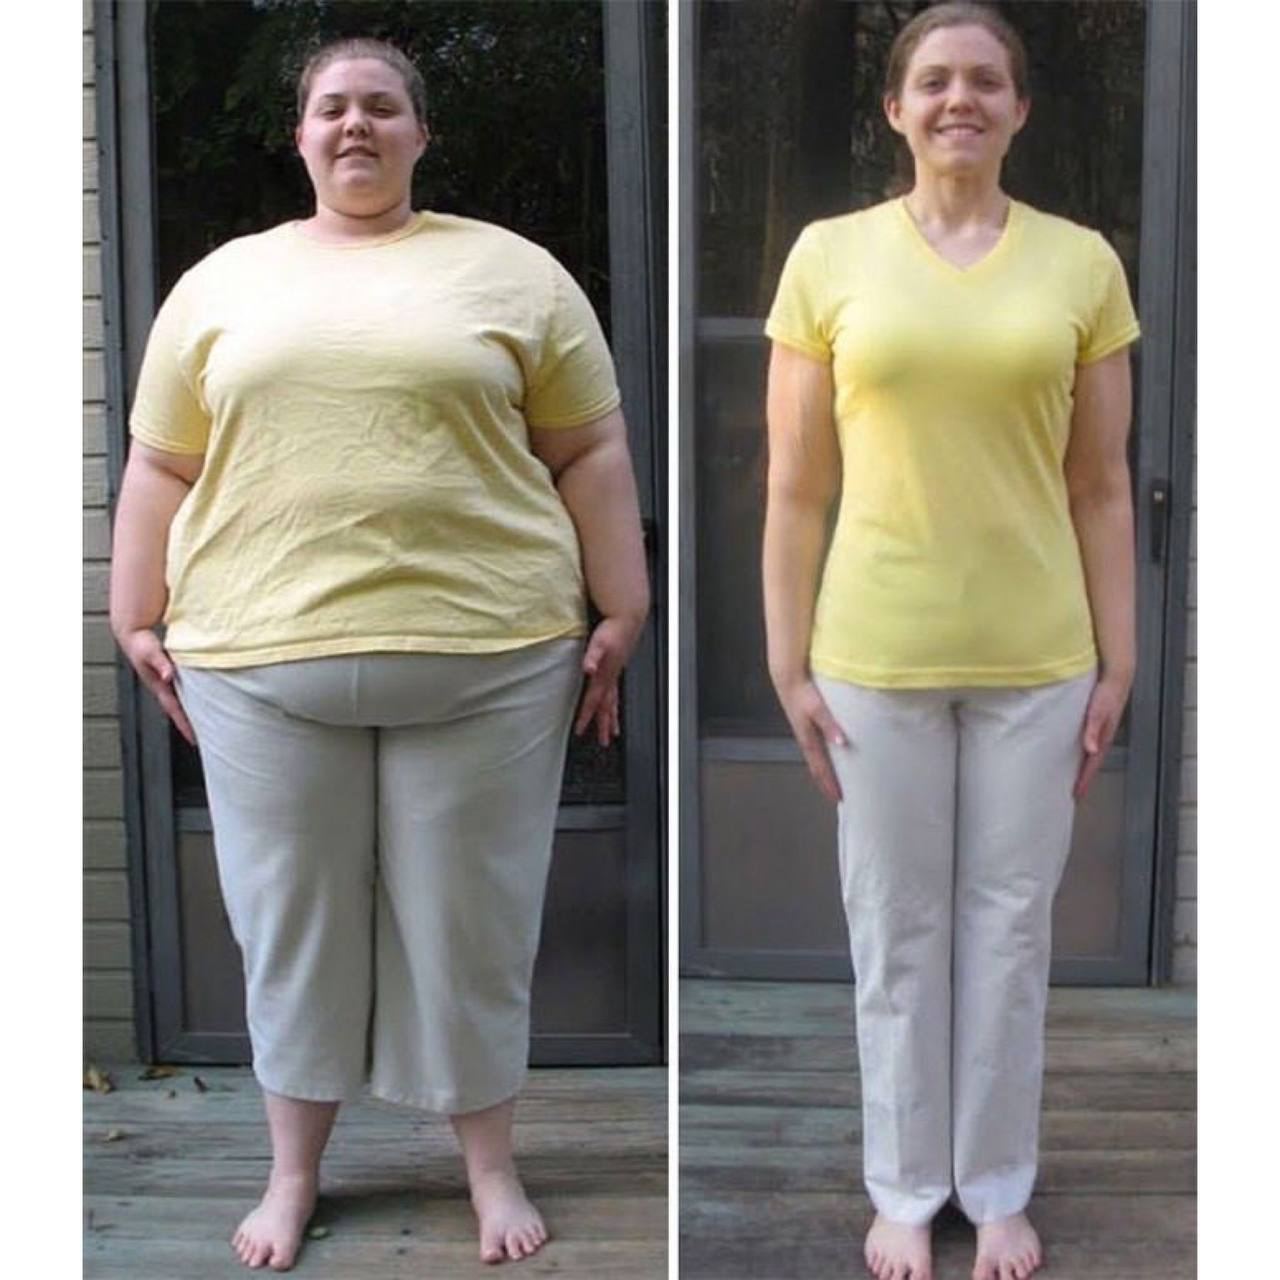 Она сильно похудела. Похудение до и после. Похудение до и после фото. Похудение до и послефтто. До и после похудения женщины.